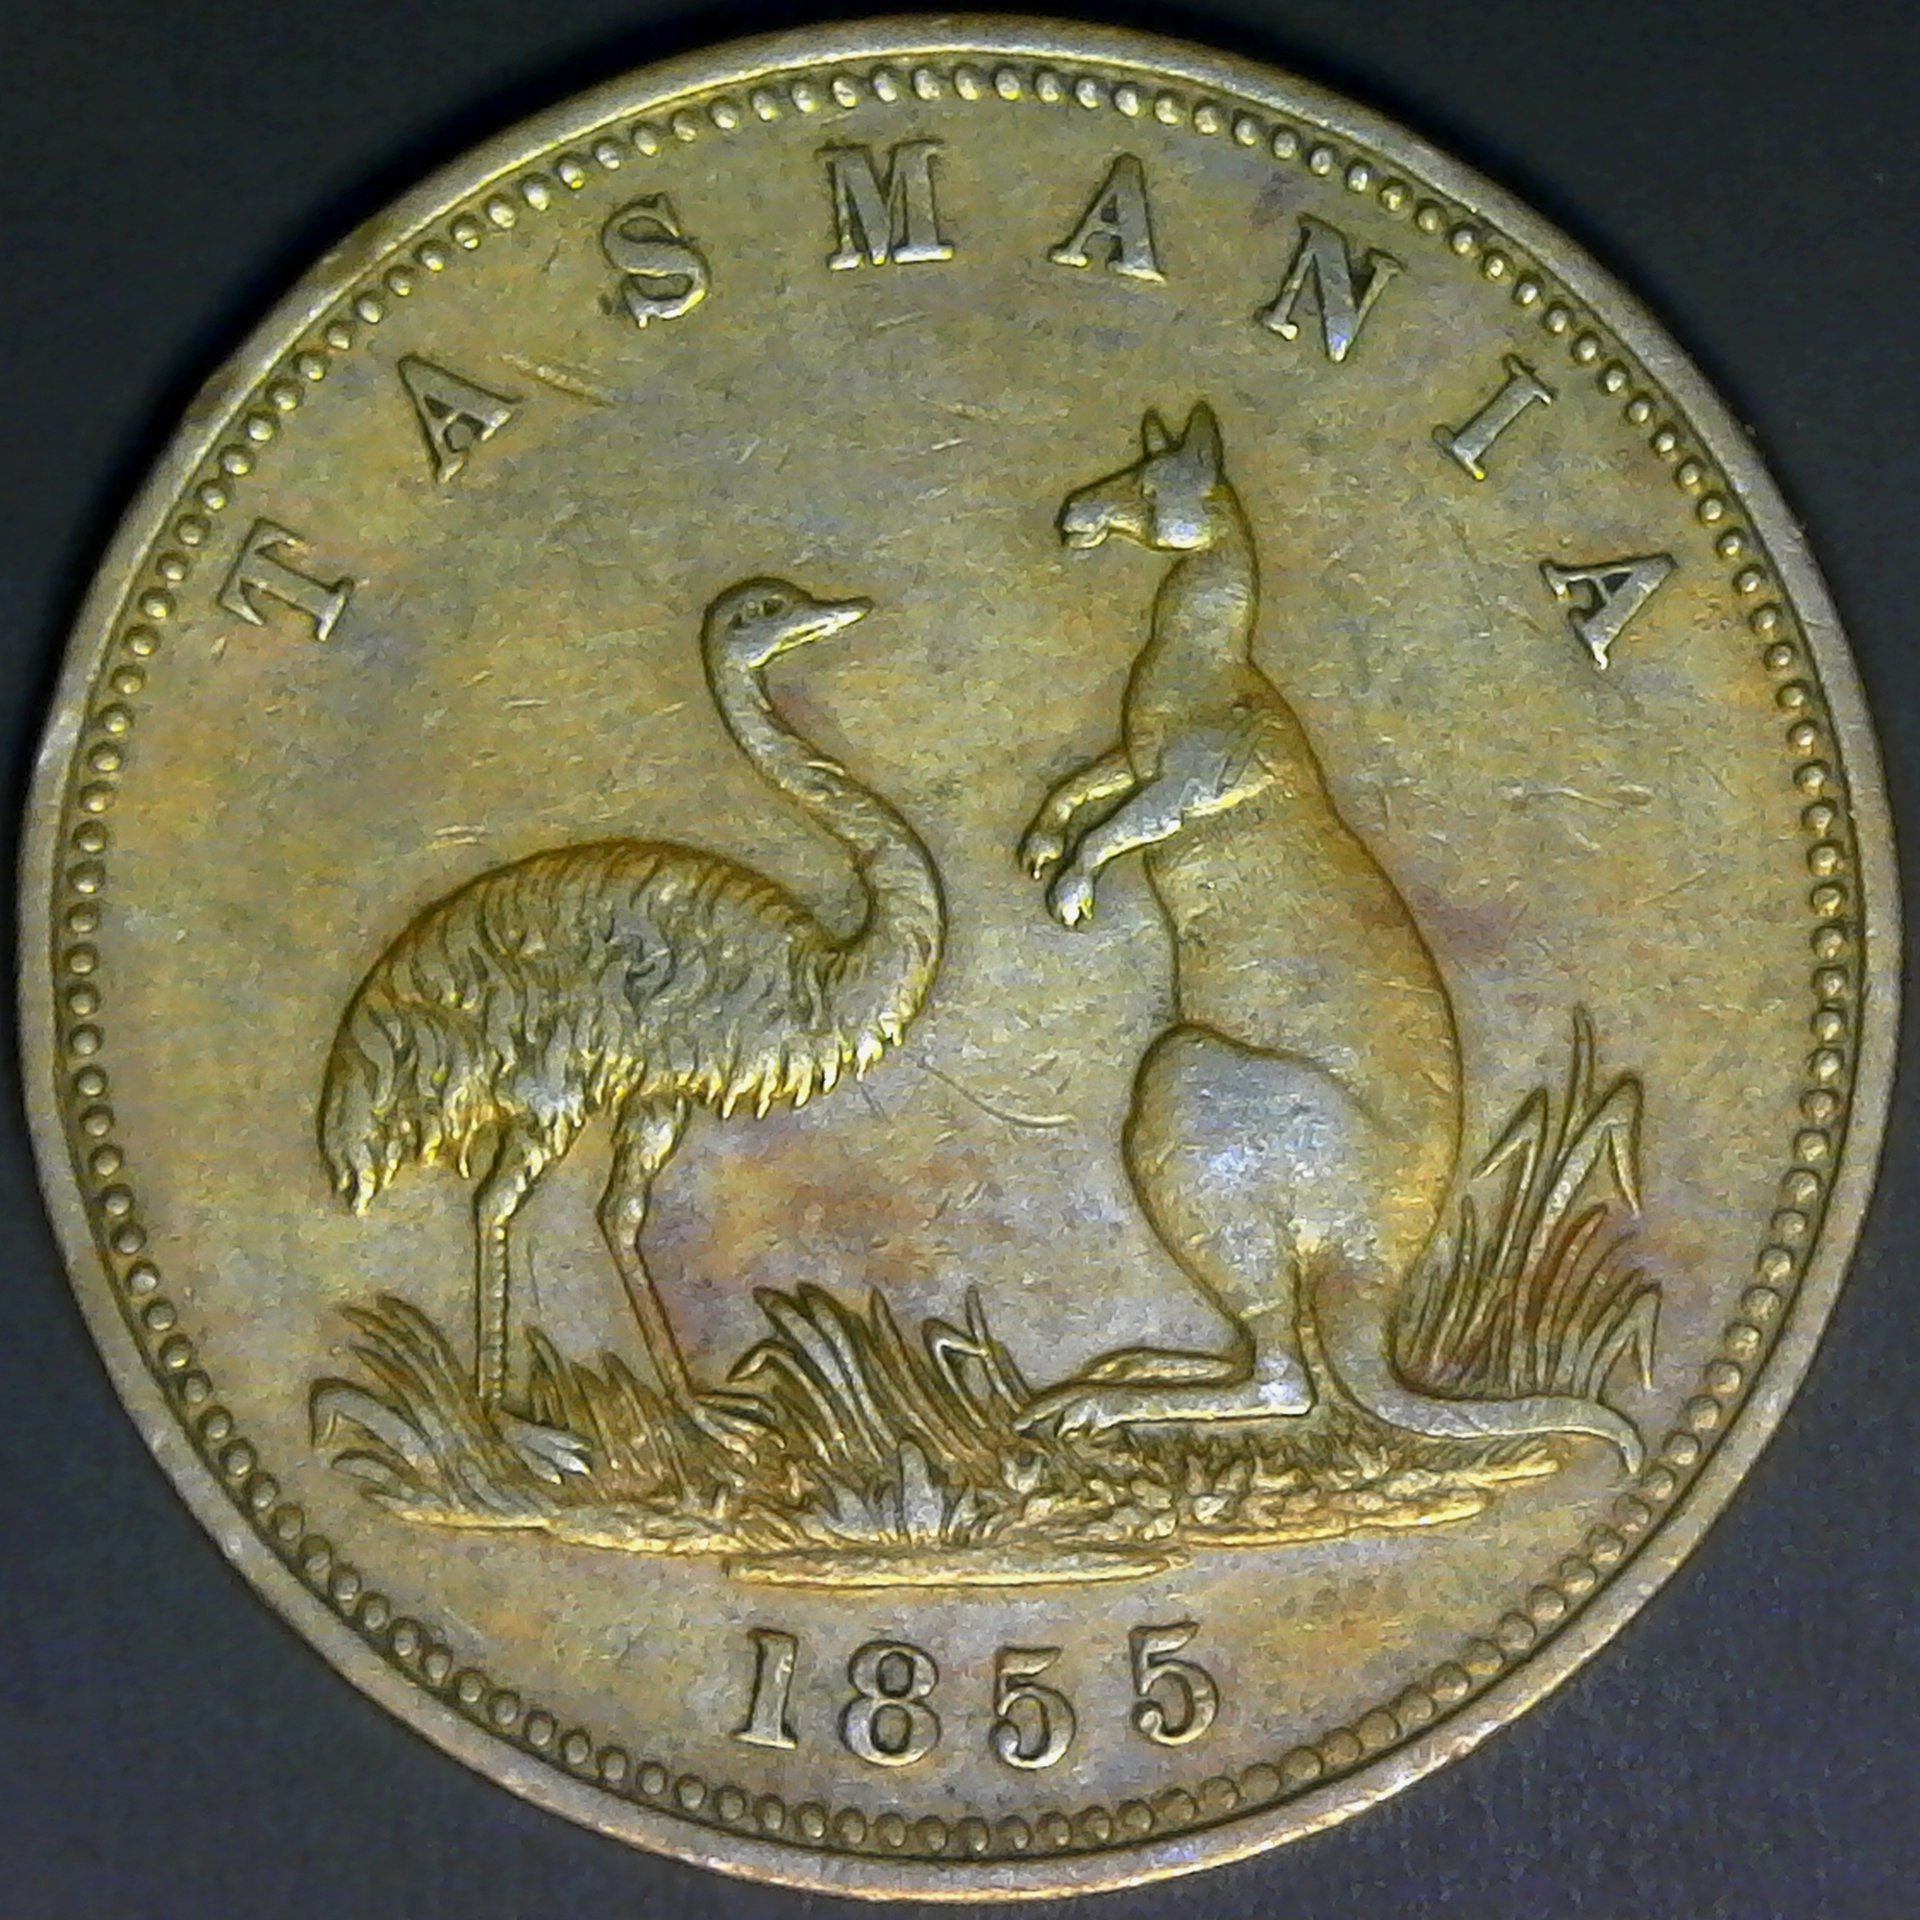 Tasmania Penny 1955 obv.jpg